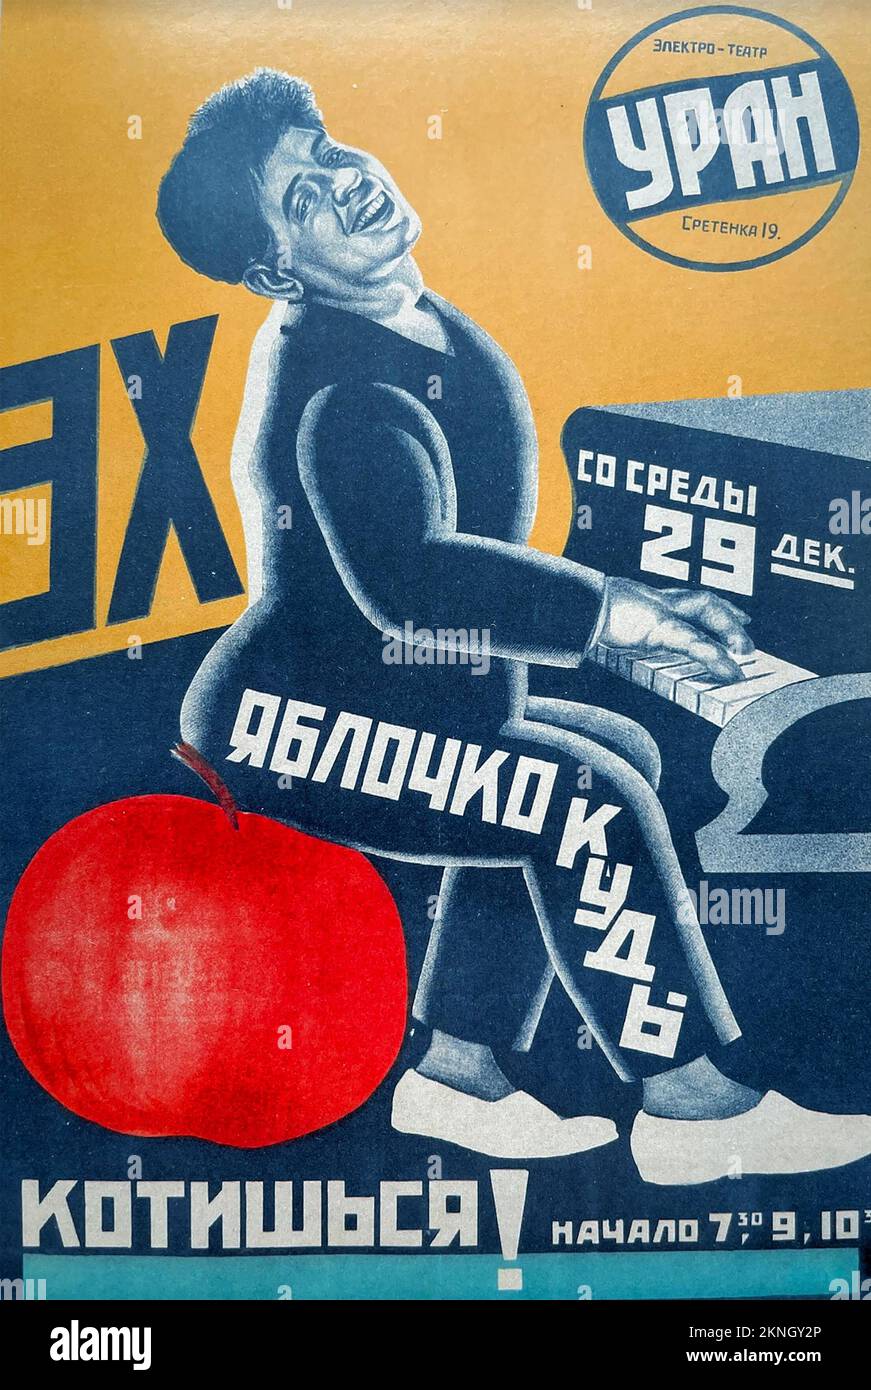 OH PETITE POMME ! Affiche soviétique annonçant un spectacle de scène au , le 29 décembre 1926 au Théâtre de l'Ouran à Moscou Banque D'Images